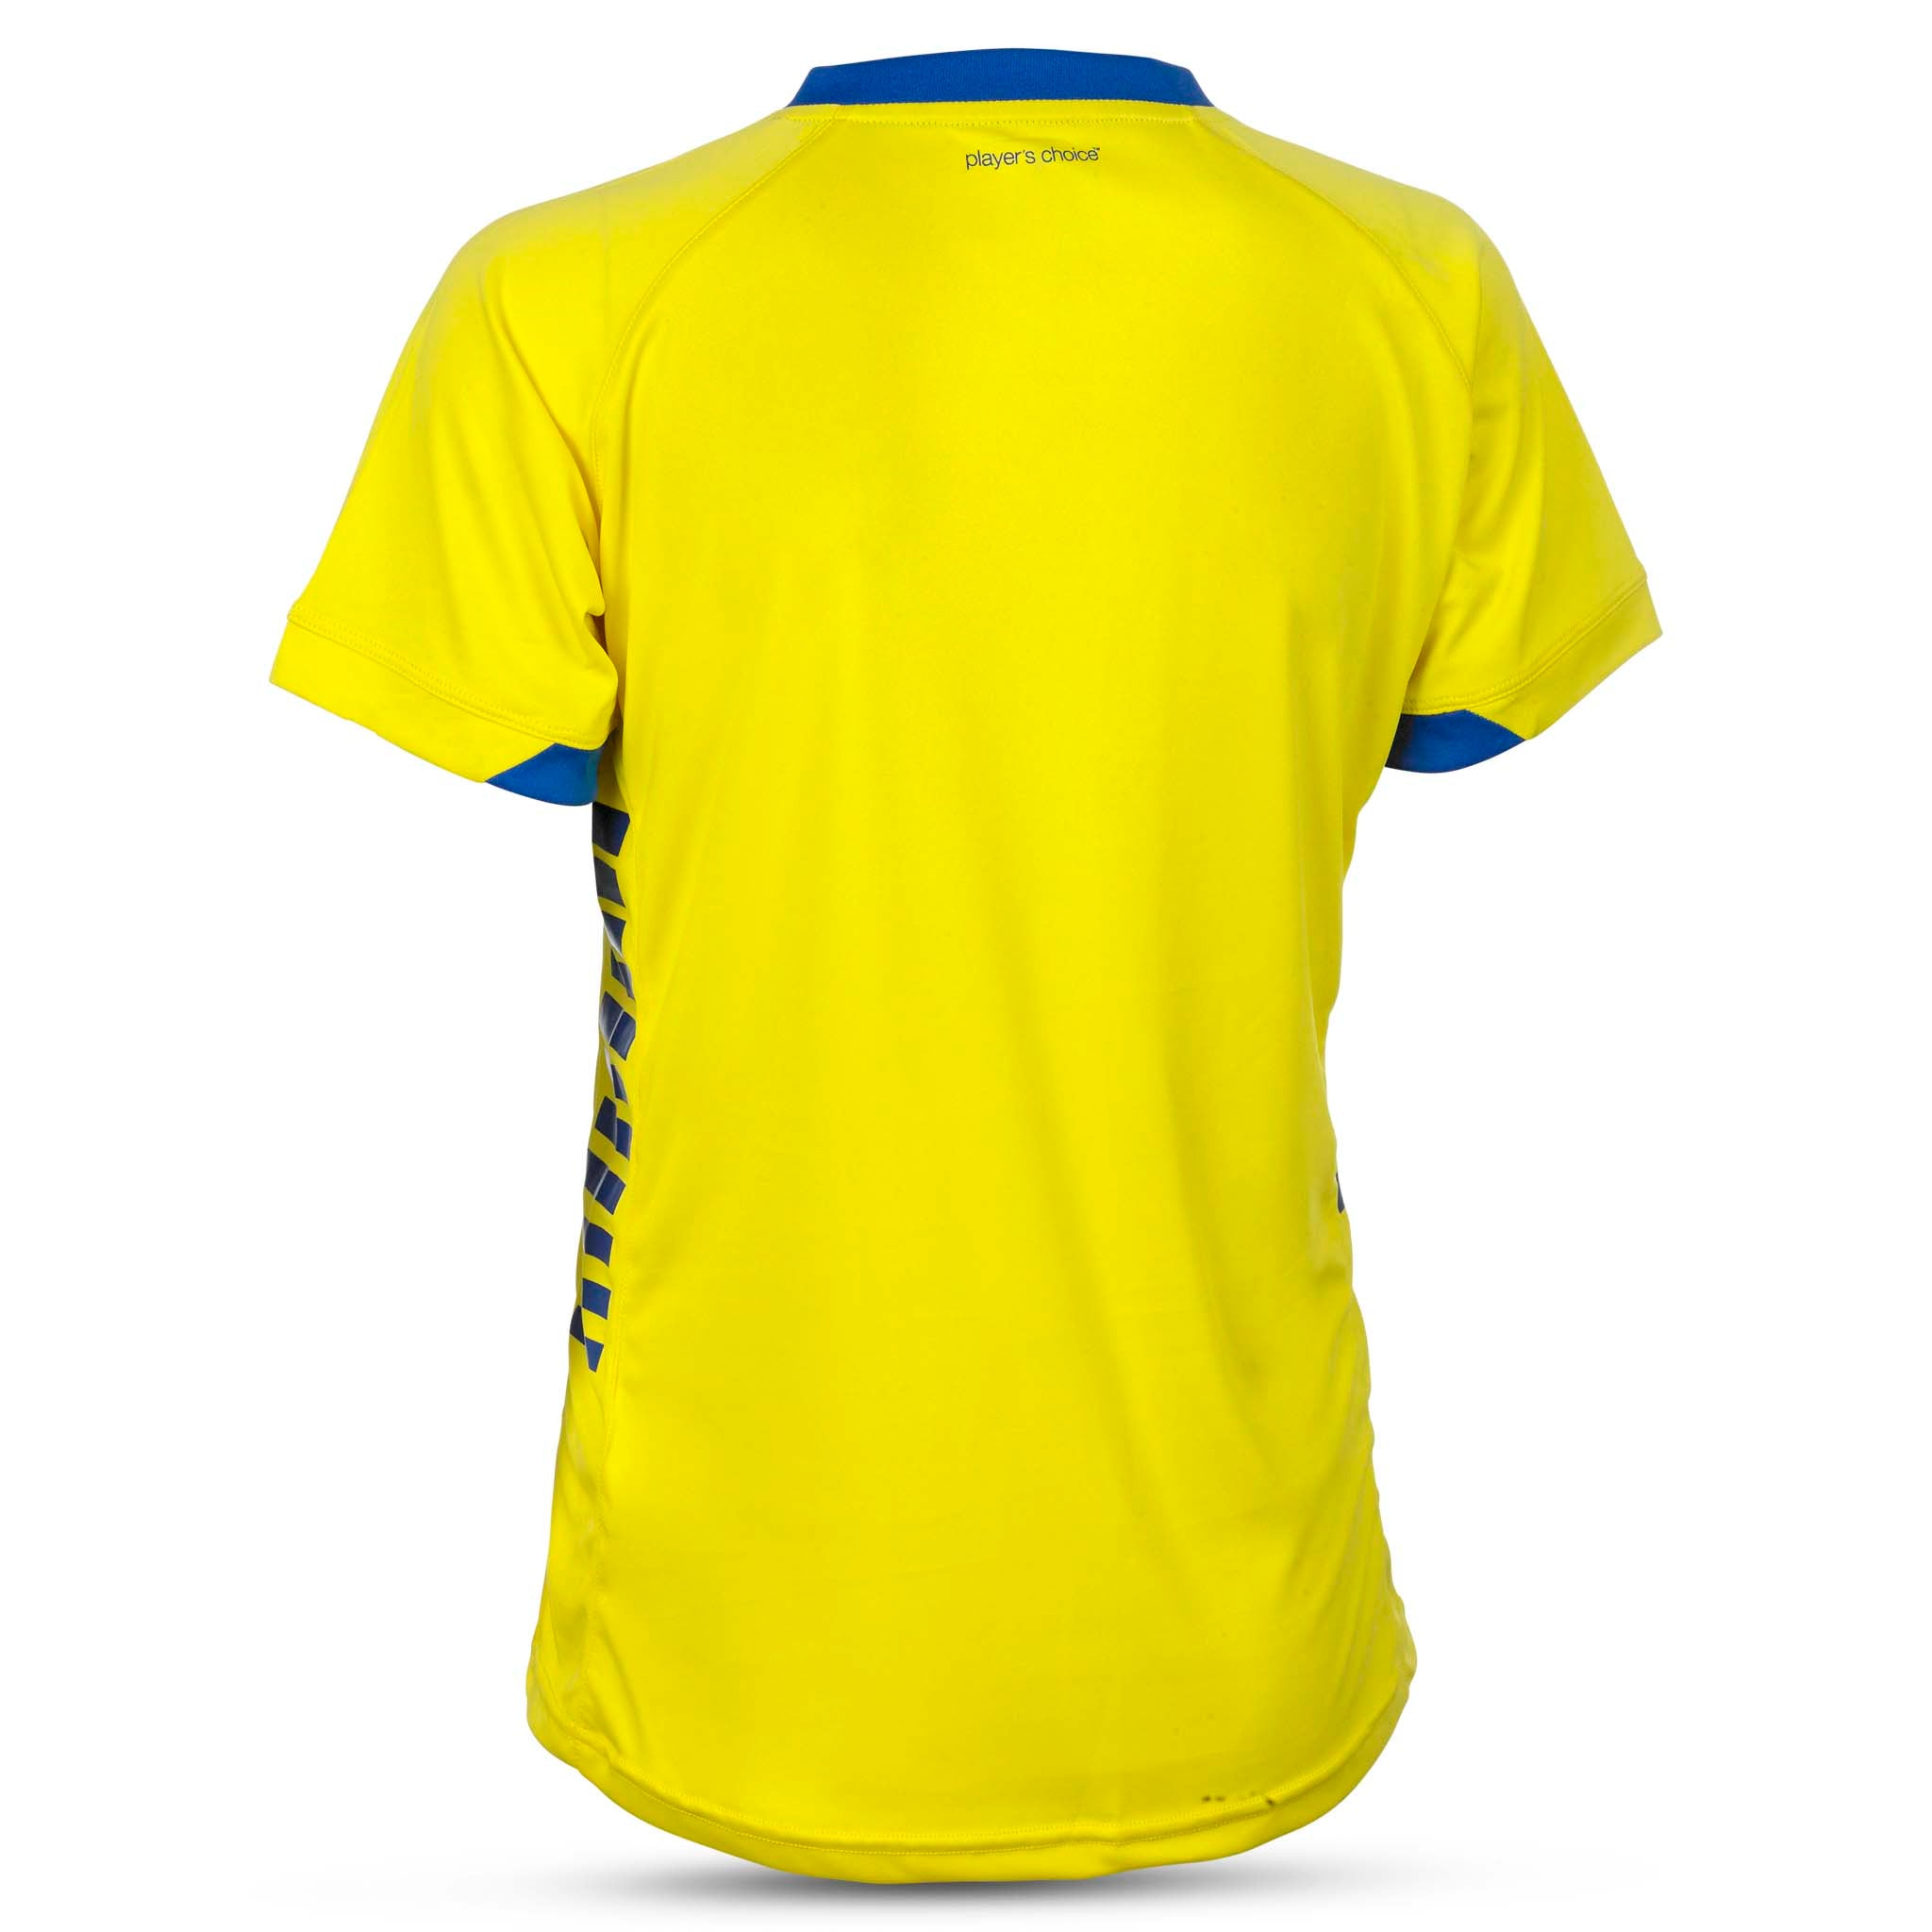 Spain Kortärmad spelartröja för - kvinnor #färg_gul/blå